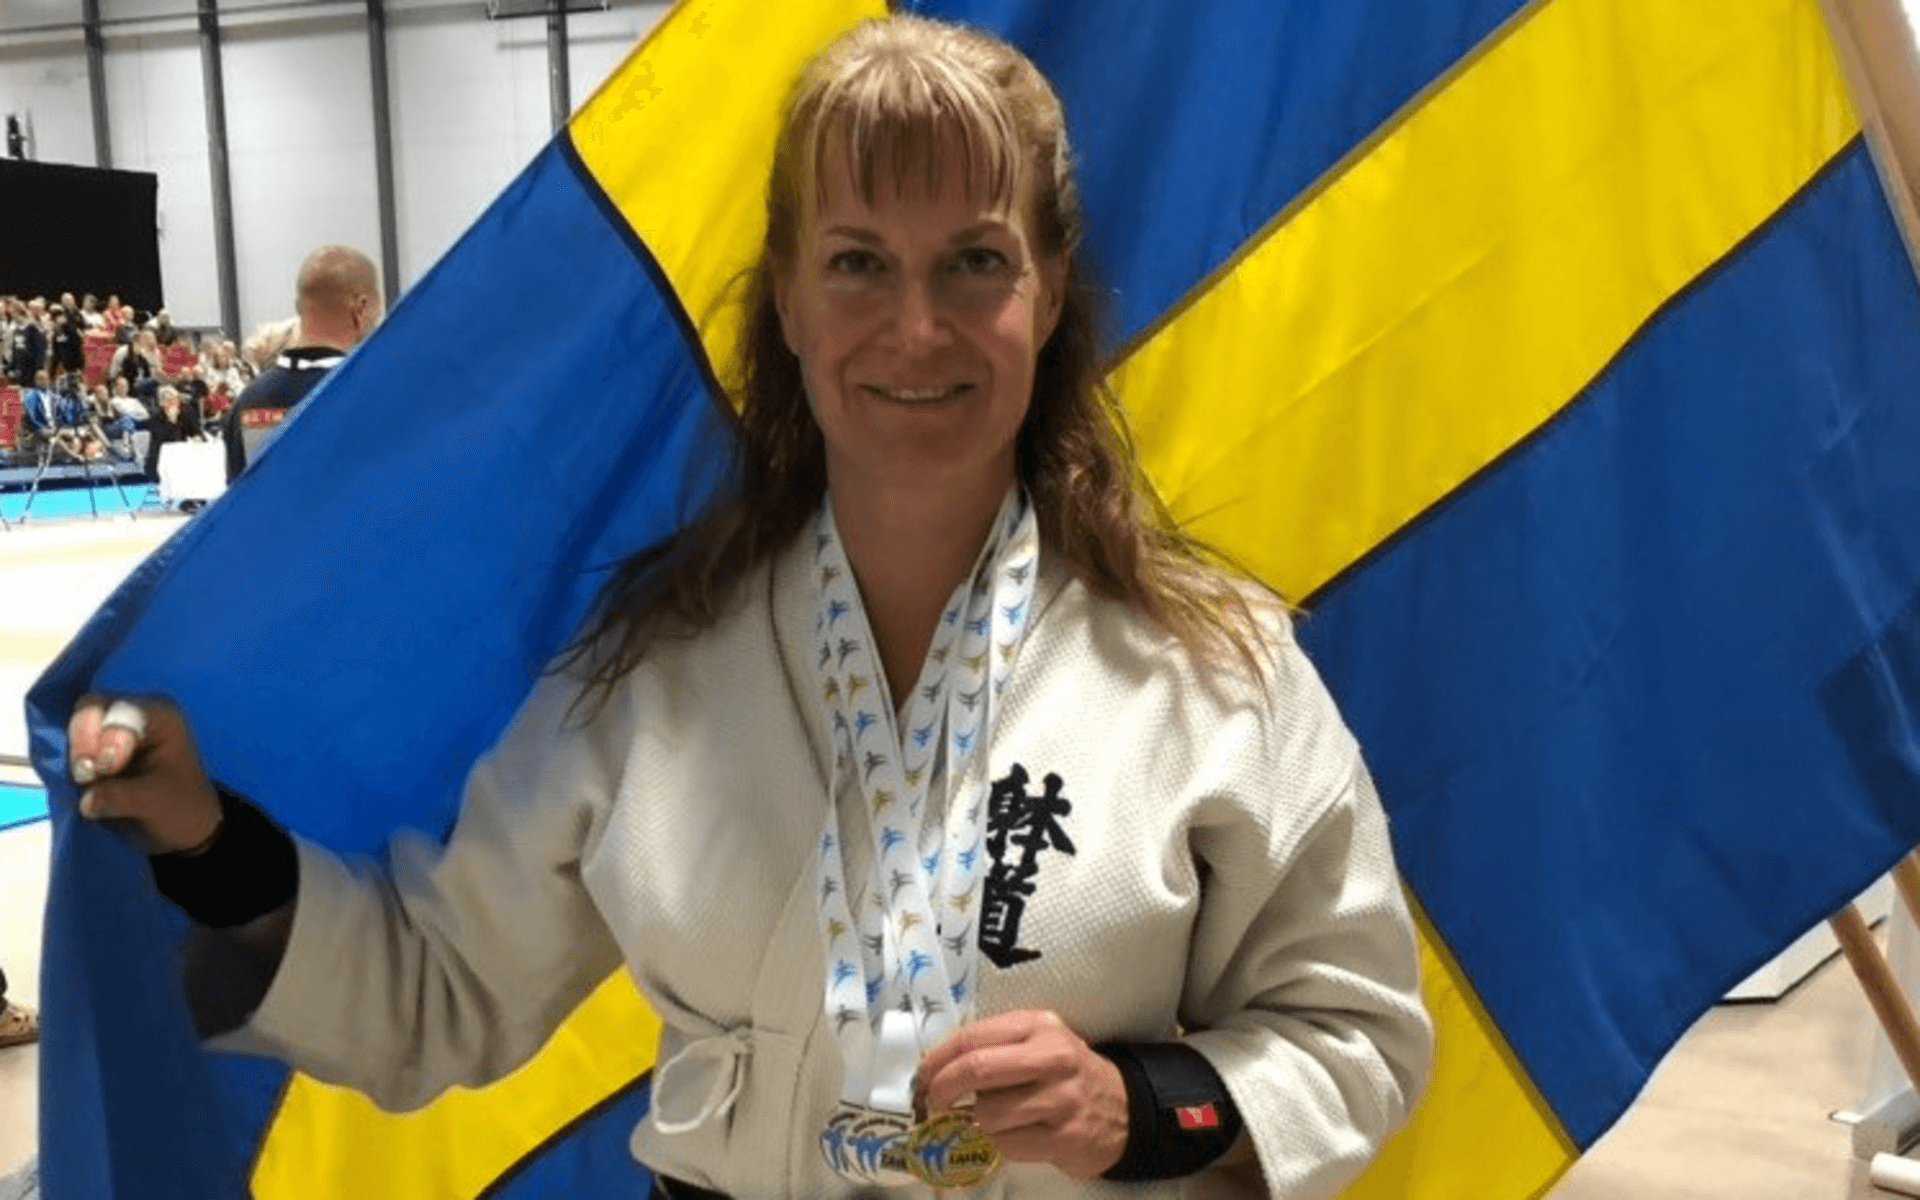 Linda Åhs från Tjörn valdes som första kvinna till ordförande i Svenska Taidoförbundet.